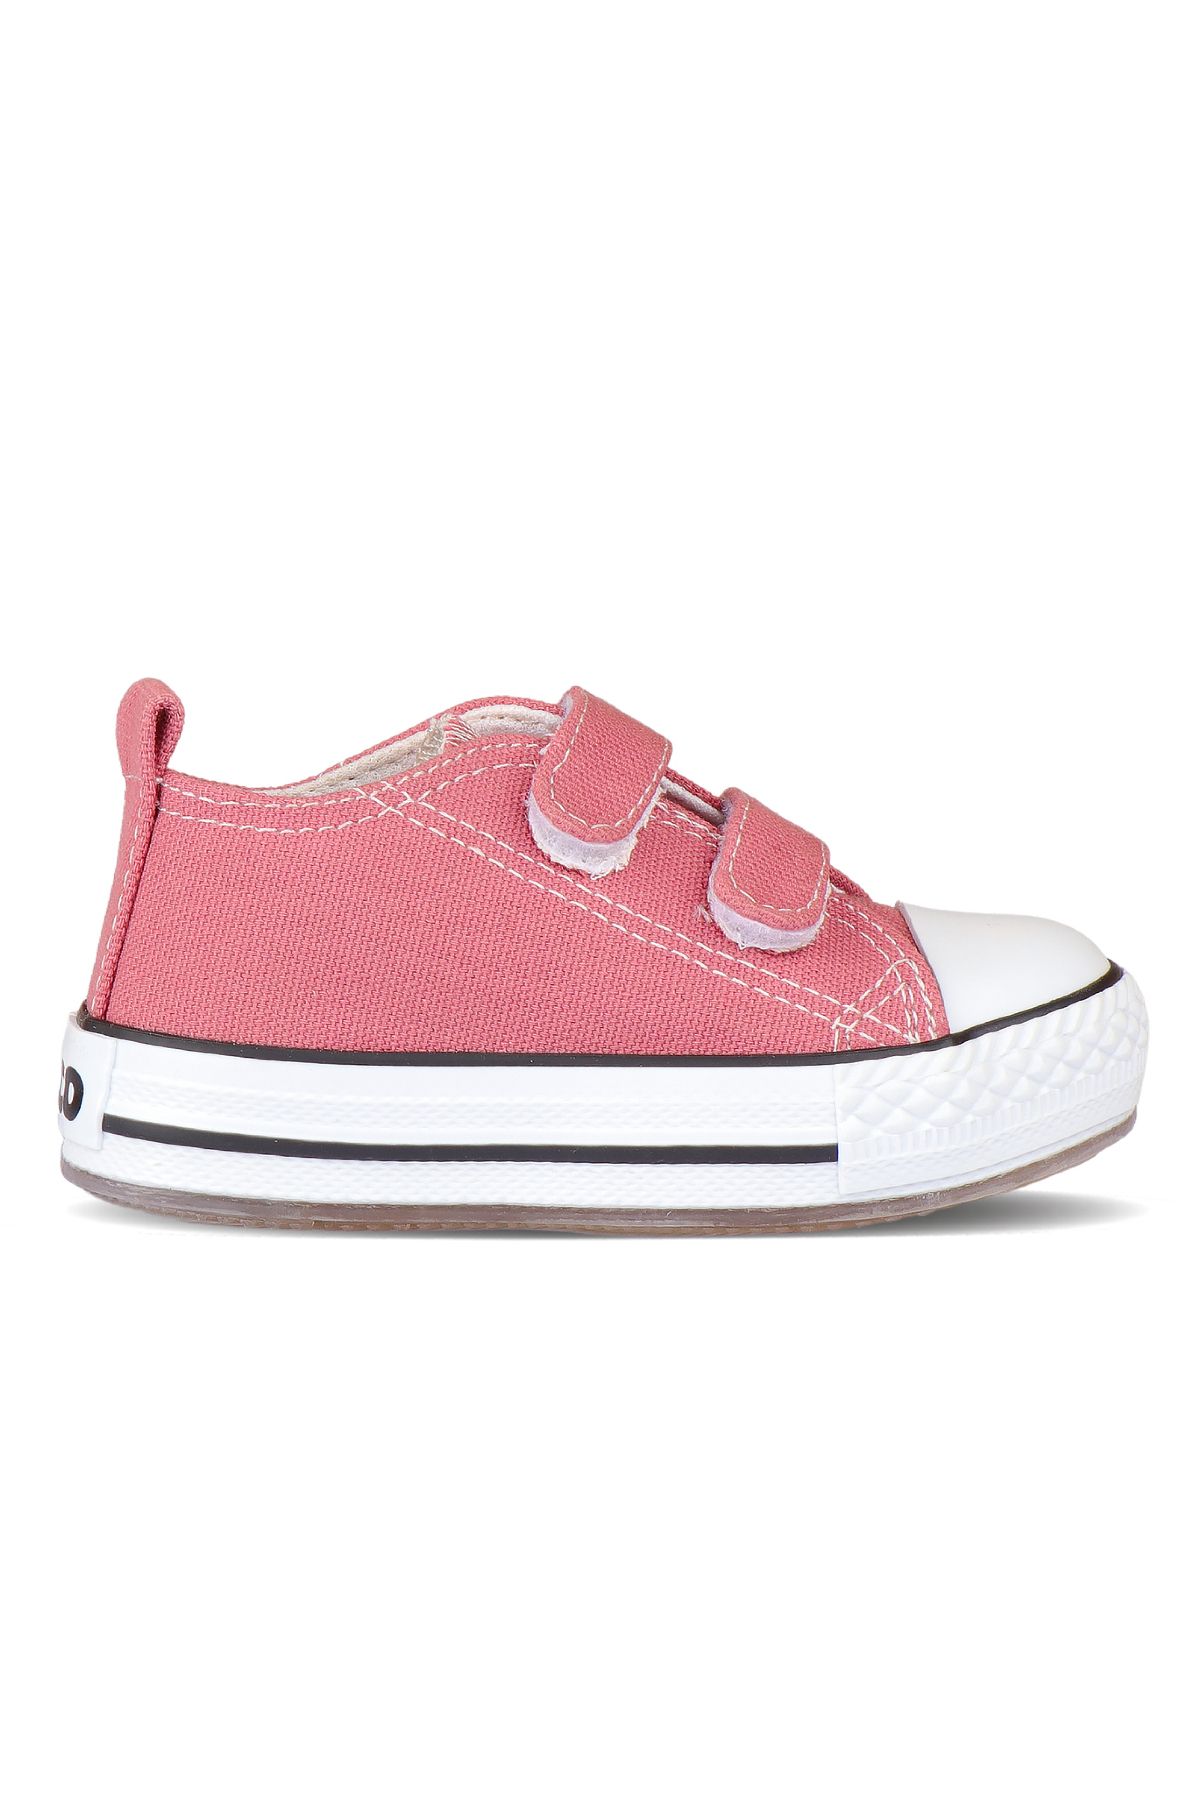 Vicco 22-30 Numara Kız Çocuk Işıklı Çocuk Sneaker